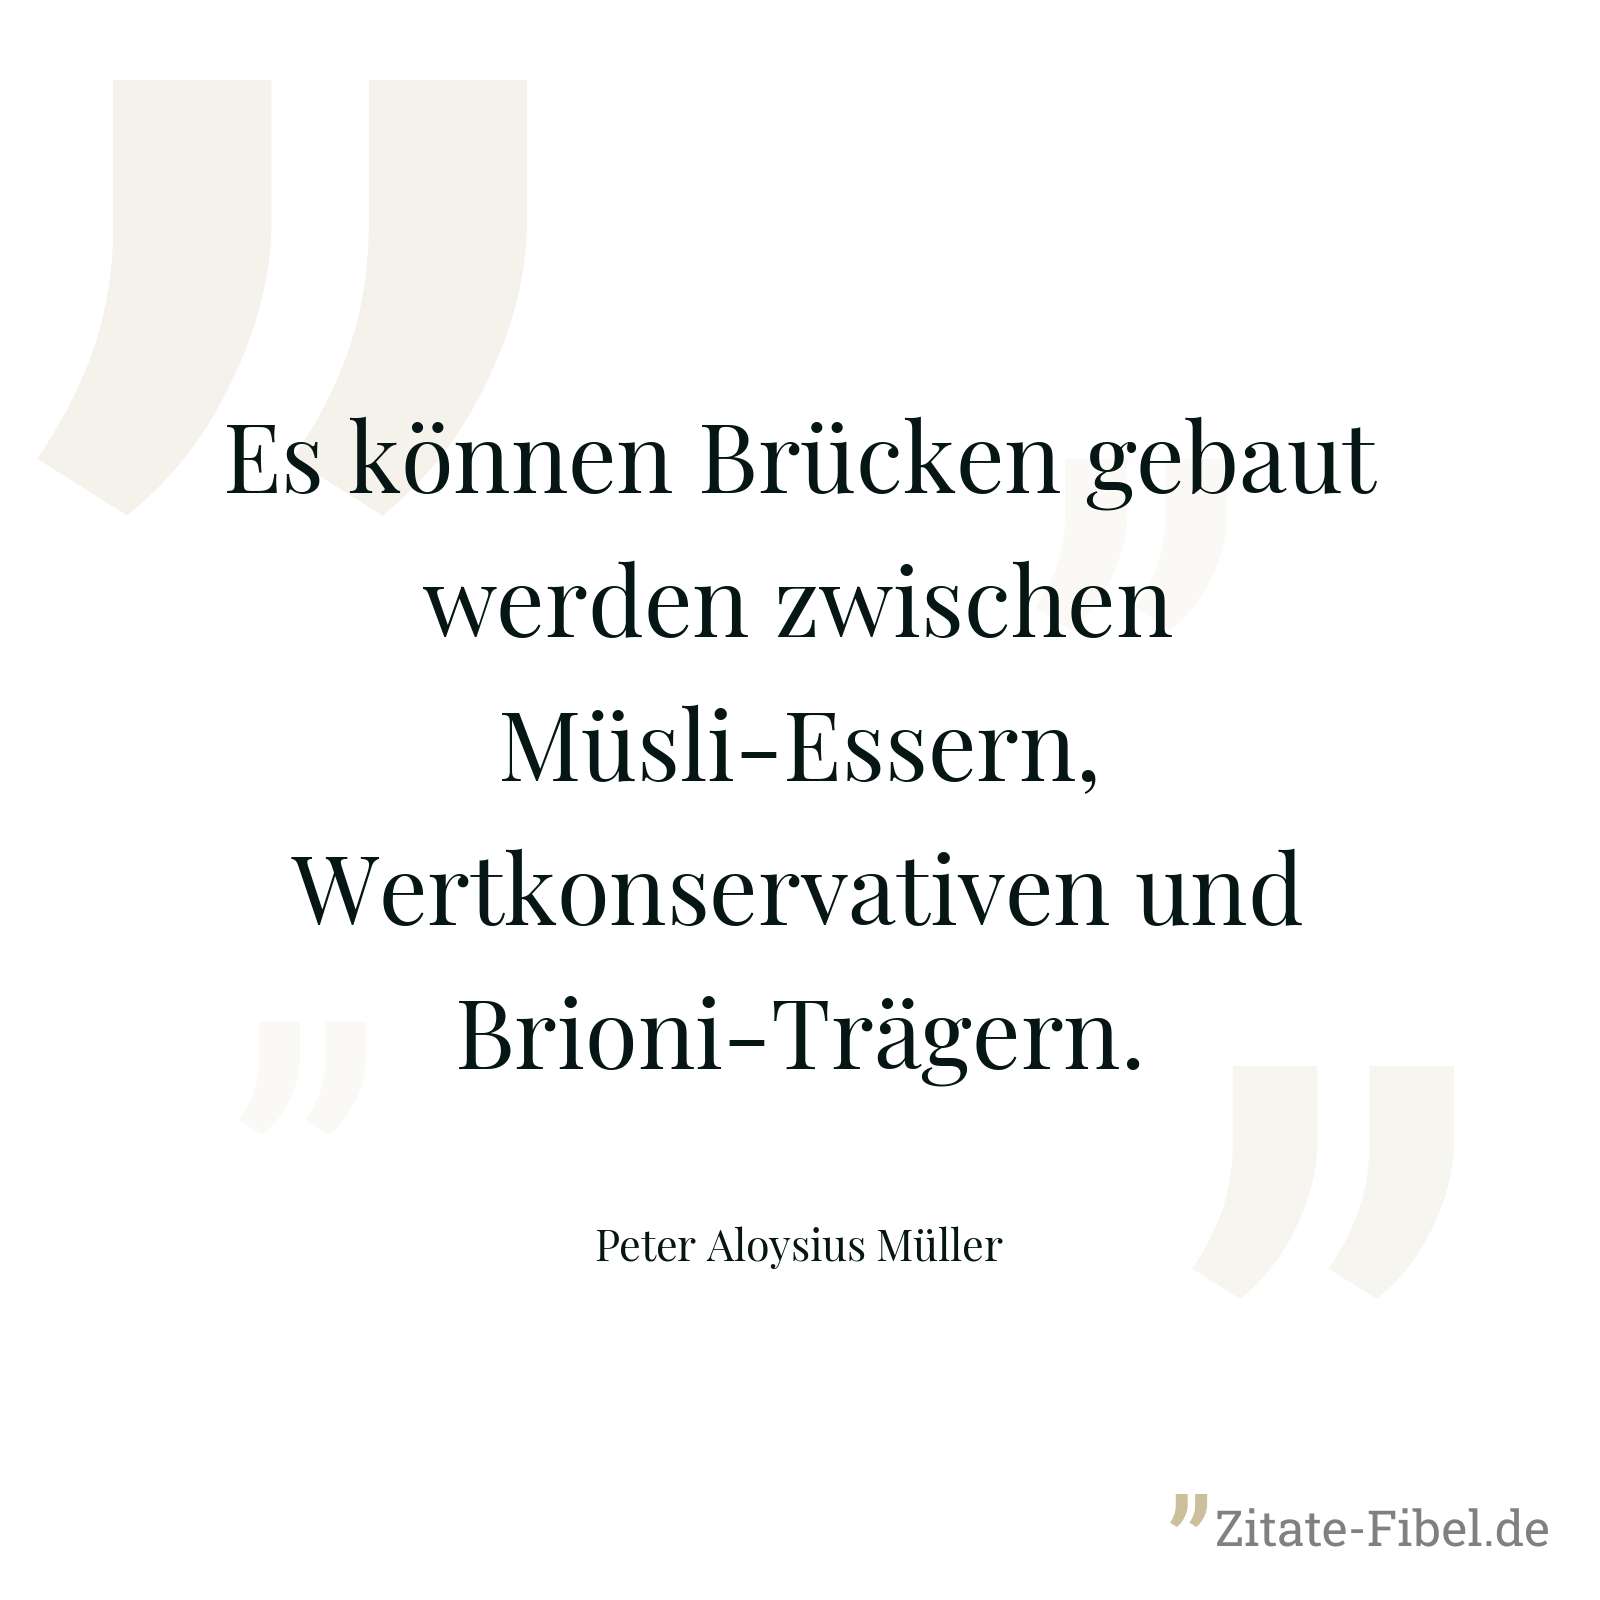 Es können Brücken gebaut werden zwischen Müsli-Essern, Wertkonservativen und Brioni-Trägern. - Peter Aloysius Müller